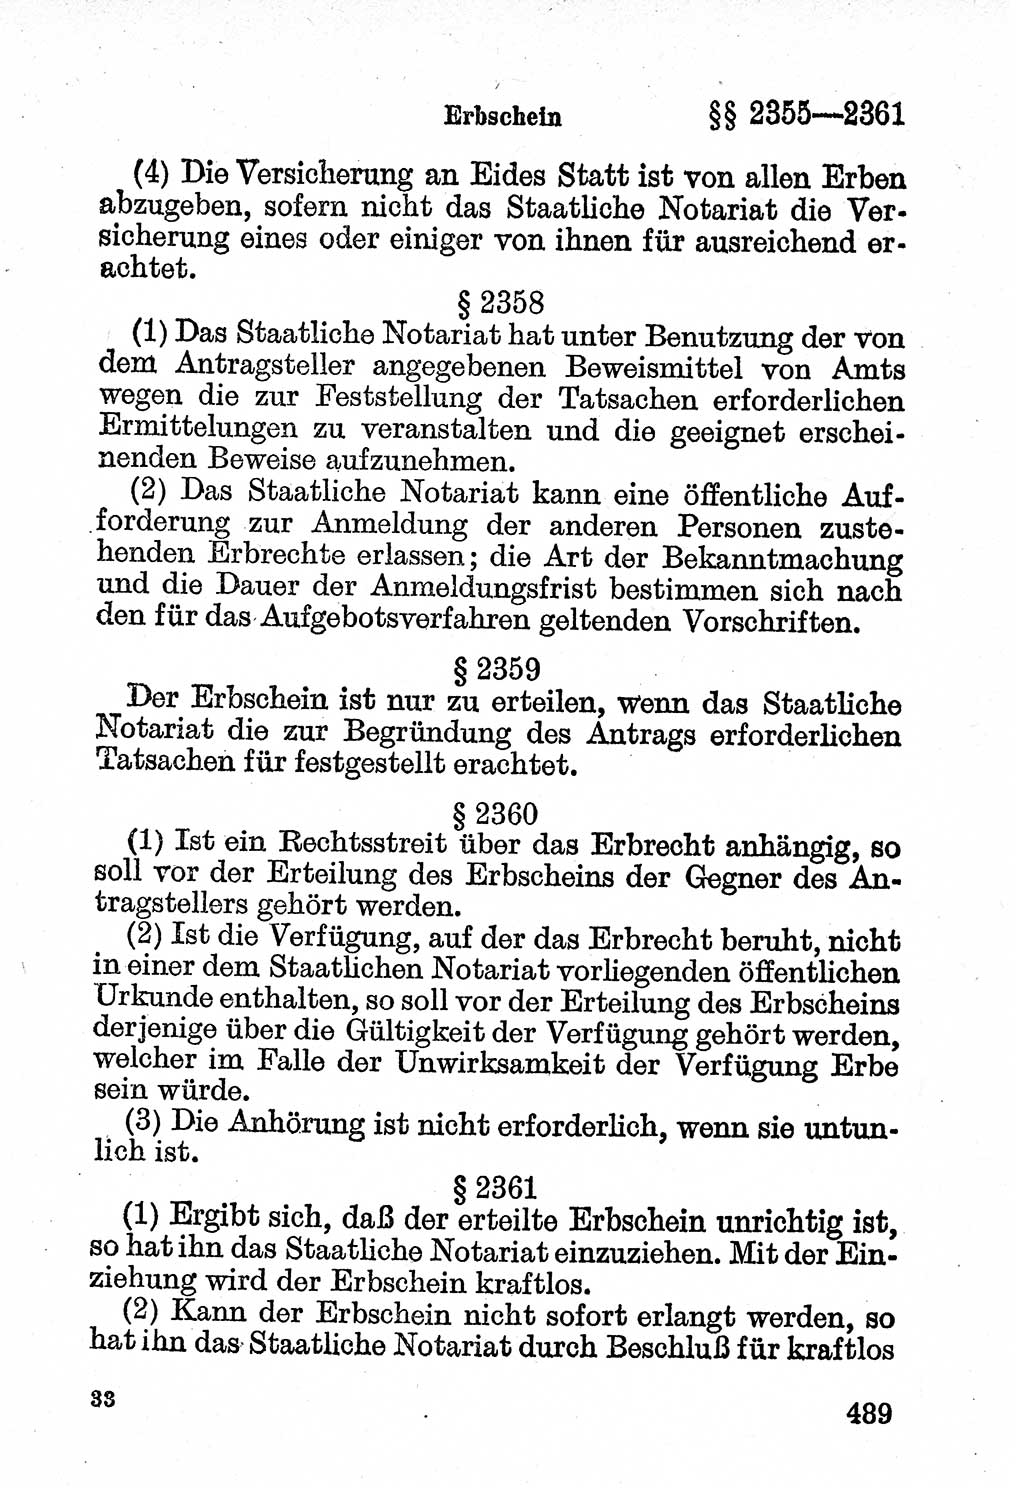 Bürgerliches Gesetzbuch (BGB) nebst wichtigen Nebengesetzen [Deutsche Demokratische Republik (DDR)] 1956, Seite 489 (BGB Nebenges. DDR 1956, S. 489)